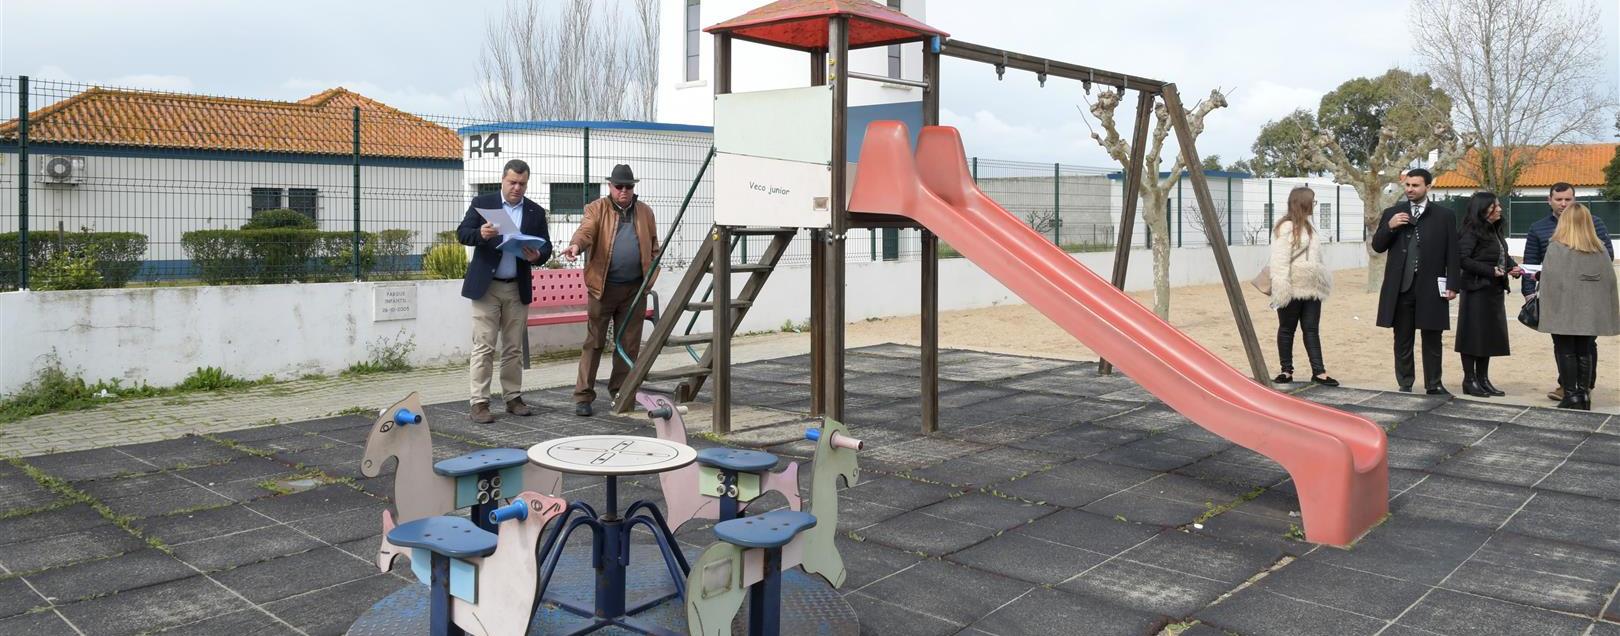 Mais 60 mil euros para reabilitação de parques infantis